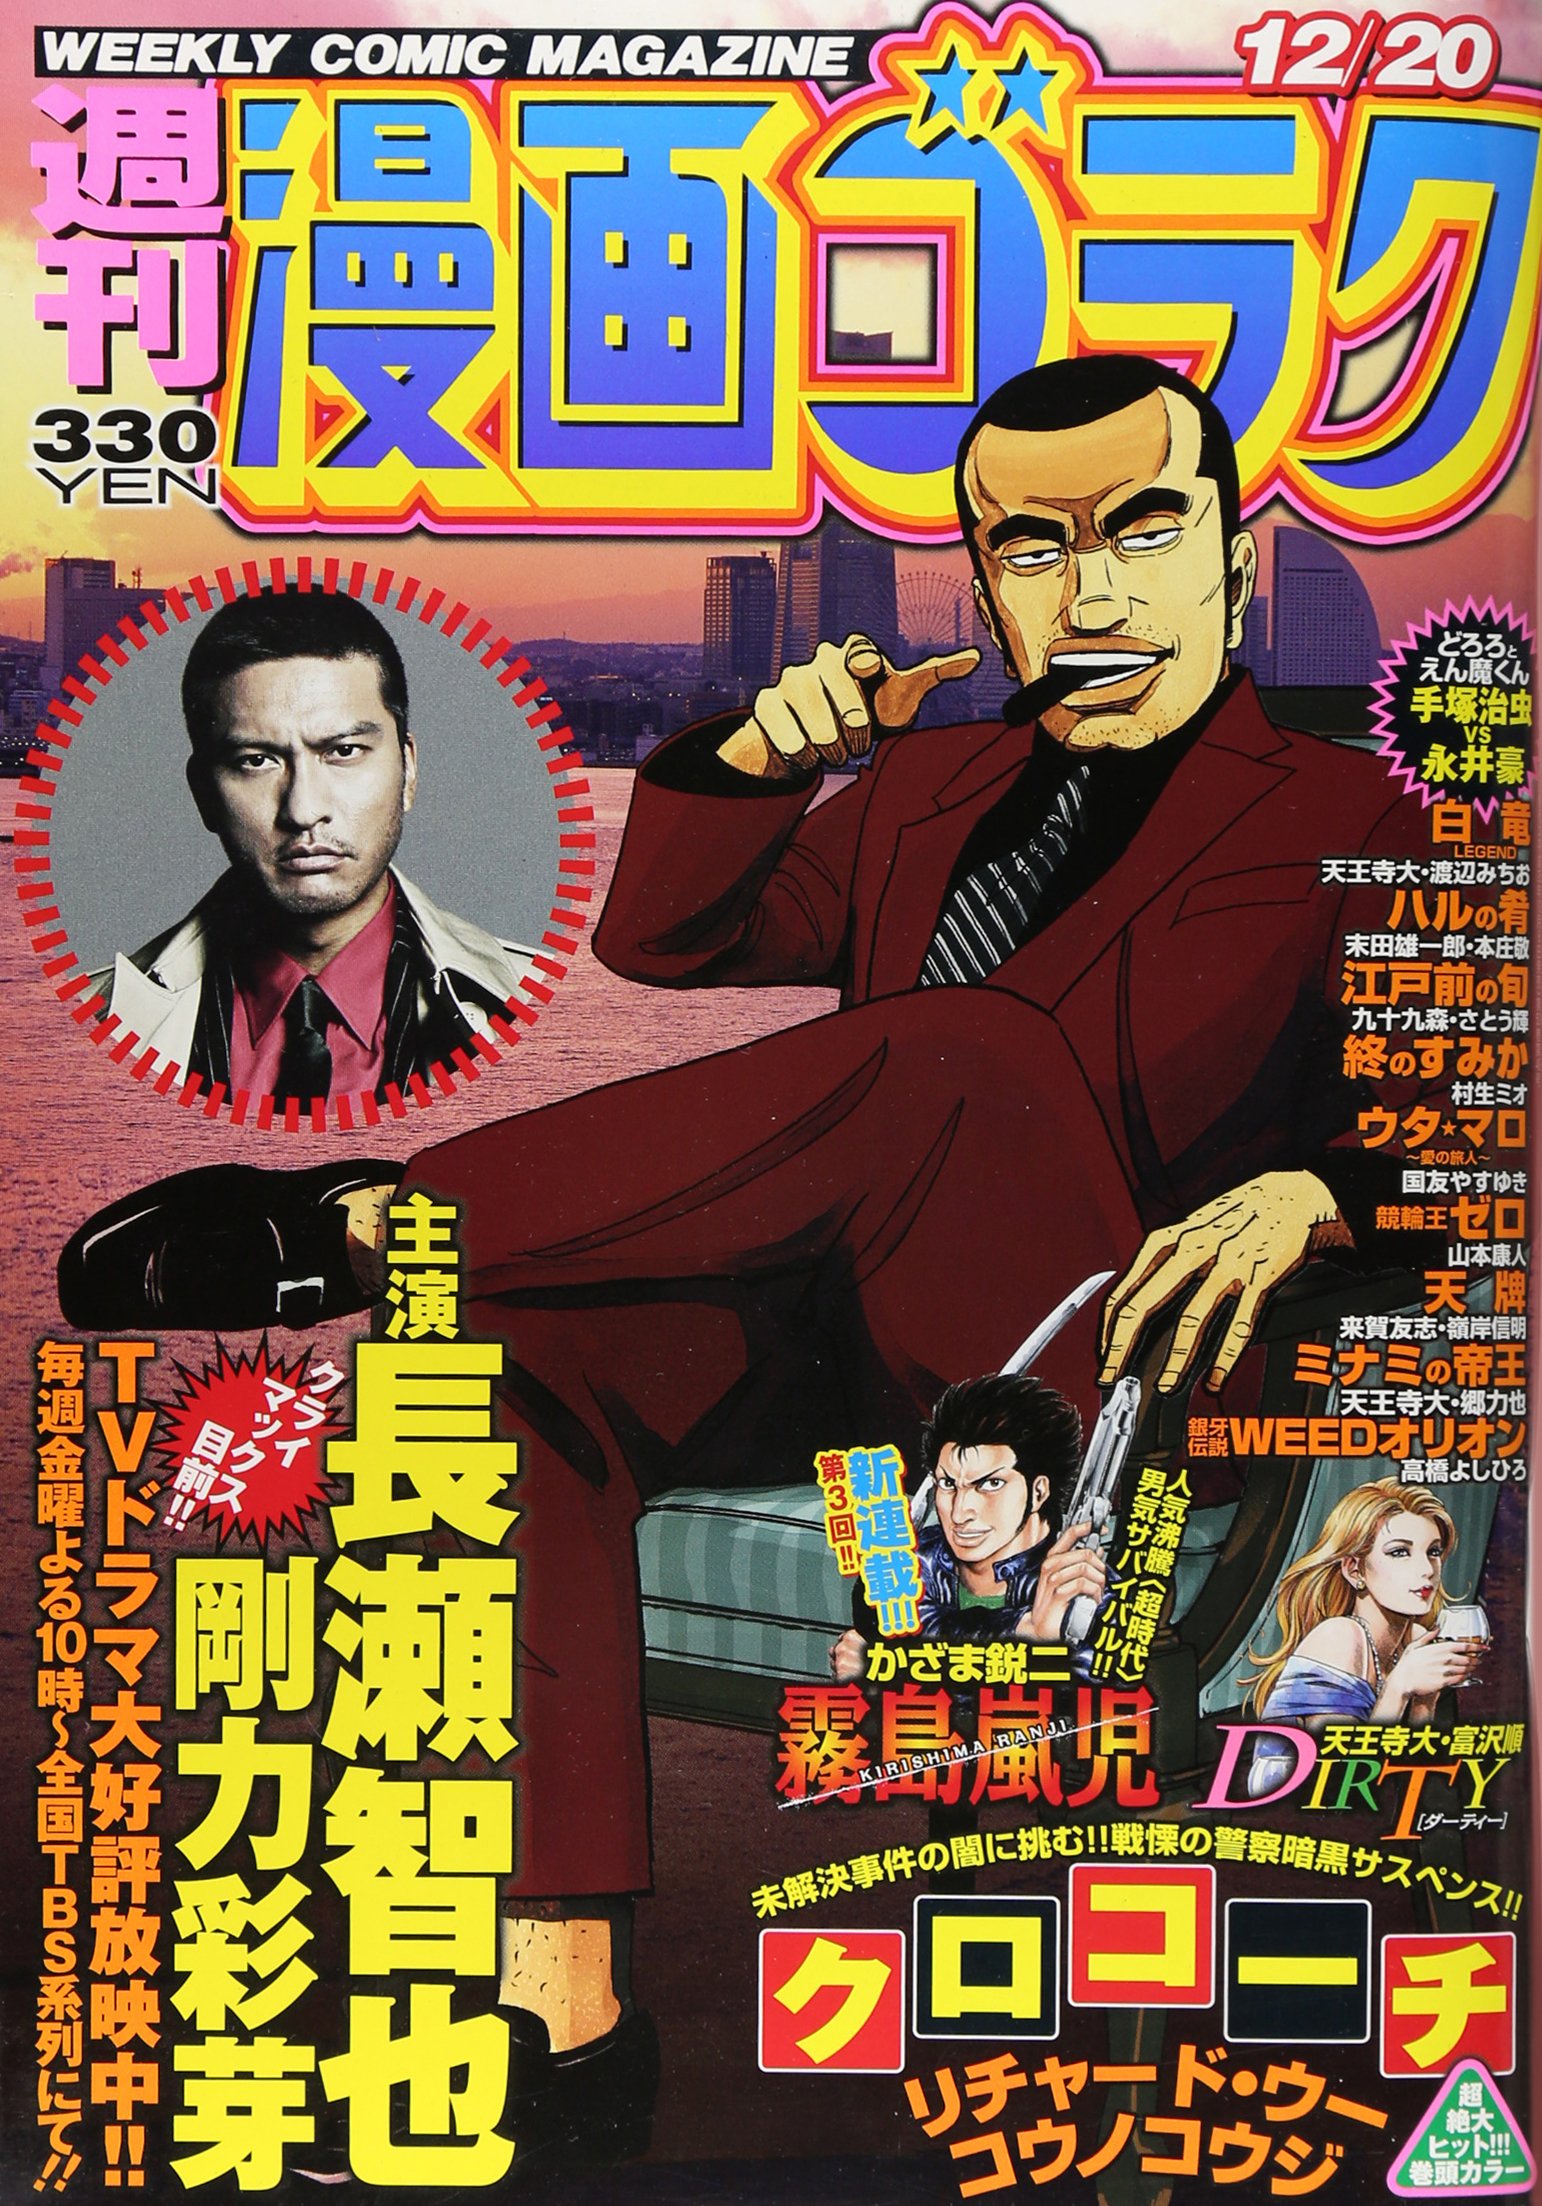 Weekly Manga Goraku 2013 12 20 91 Qcm Ez VWn L